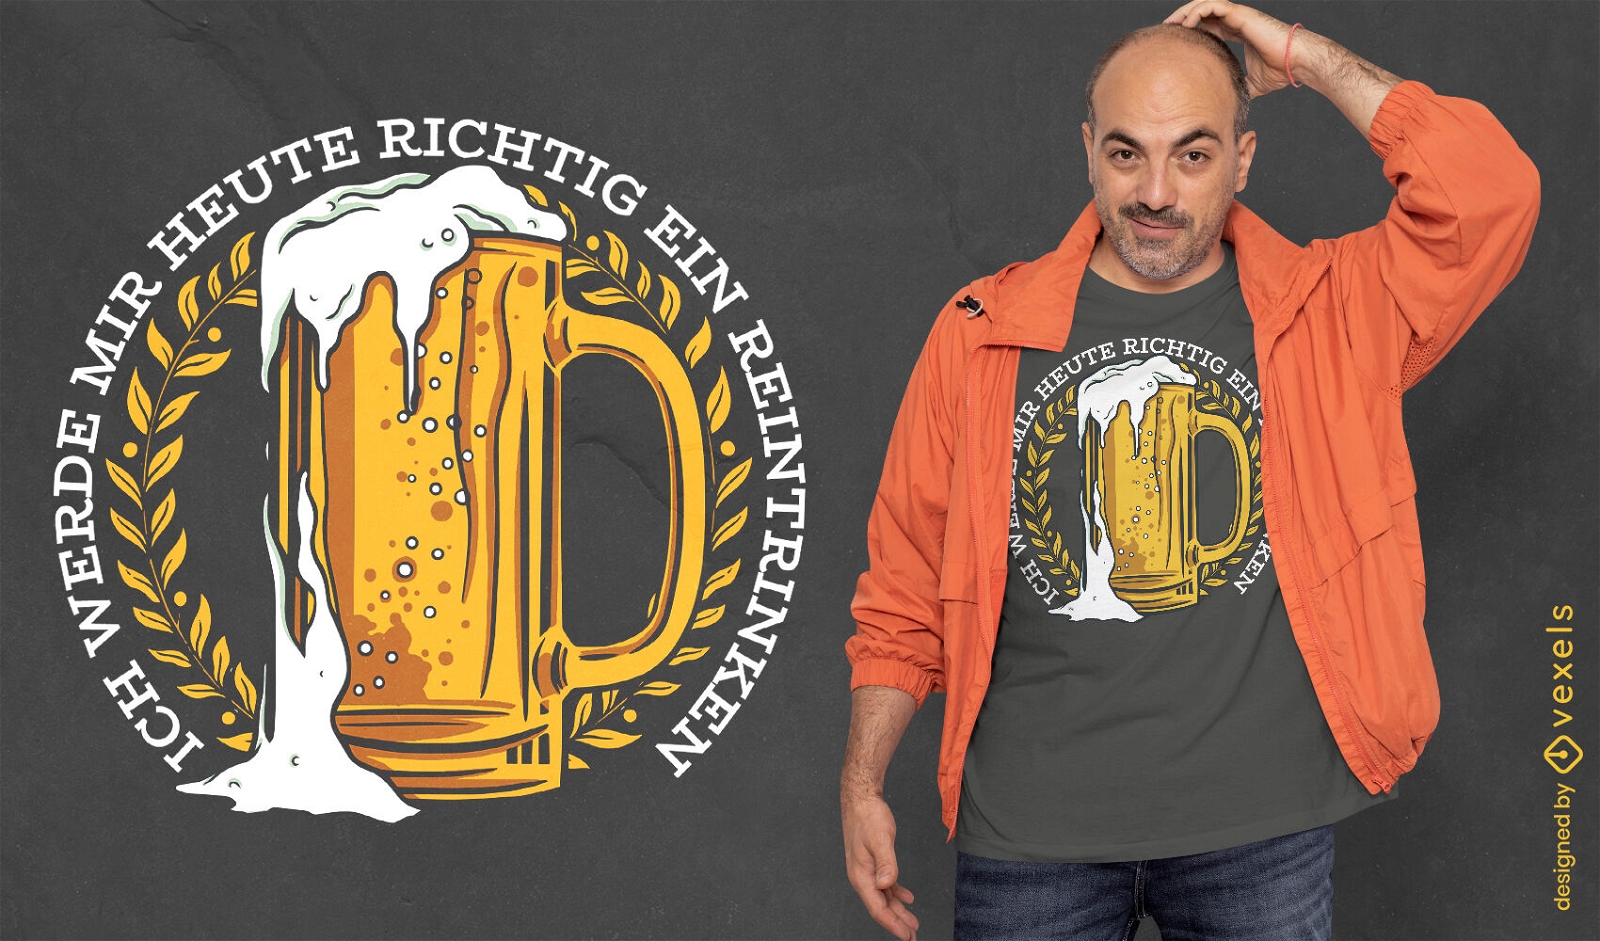 Dise?o de camiseta de bebida alcoh?lica de cerveza alemana.